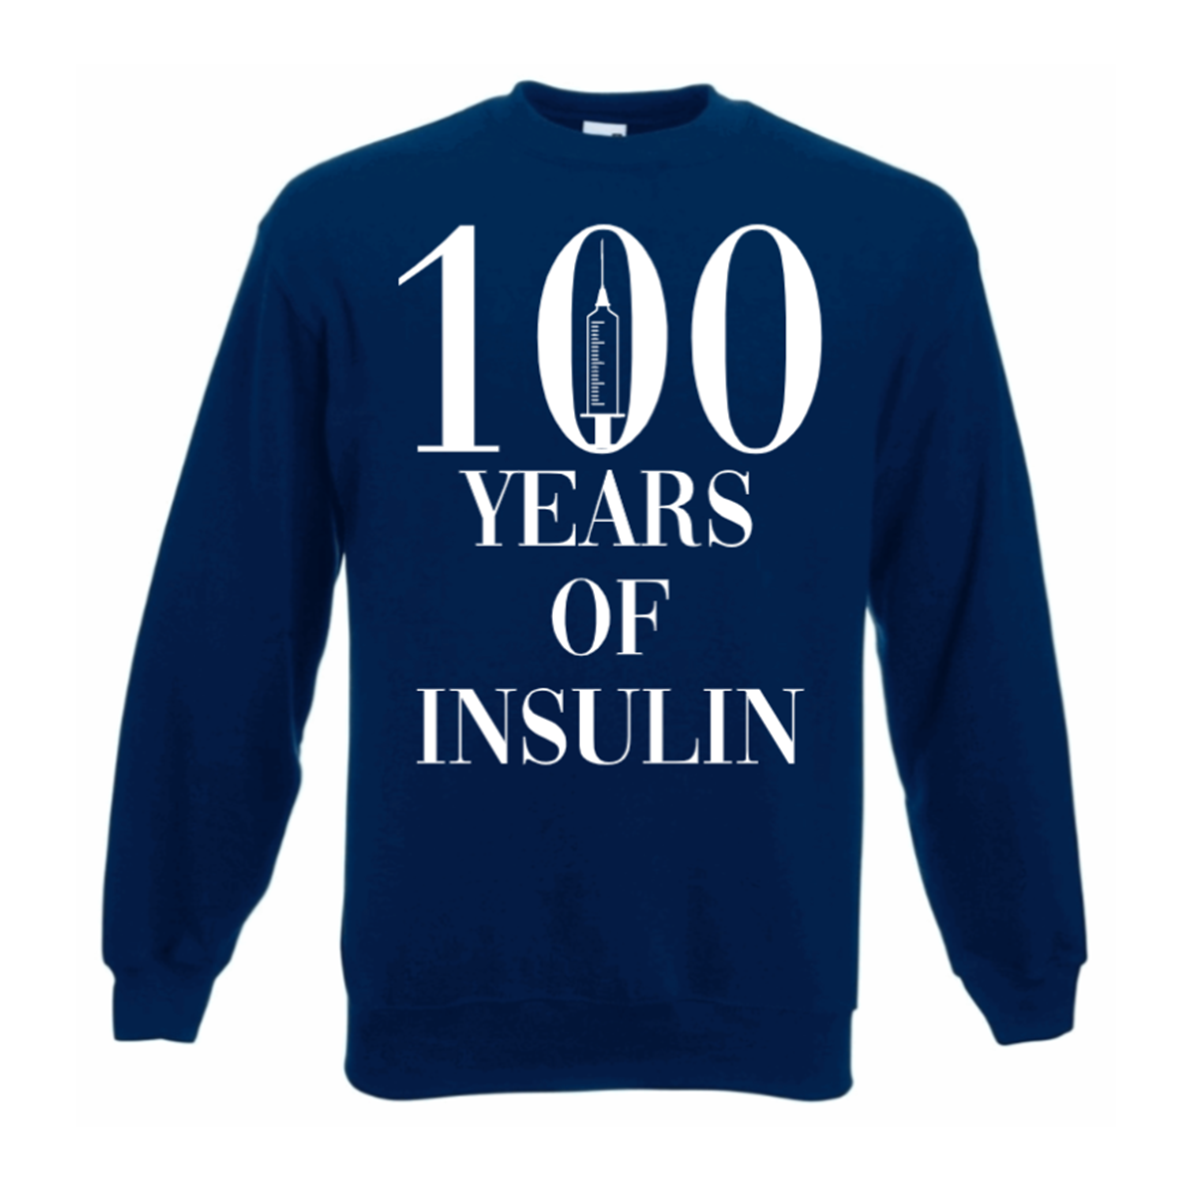 100 Years Of Insulin Sweatshirt